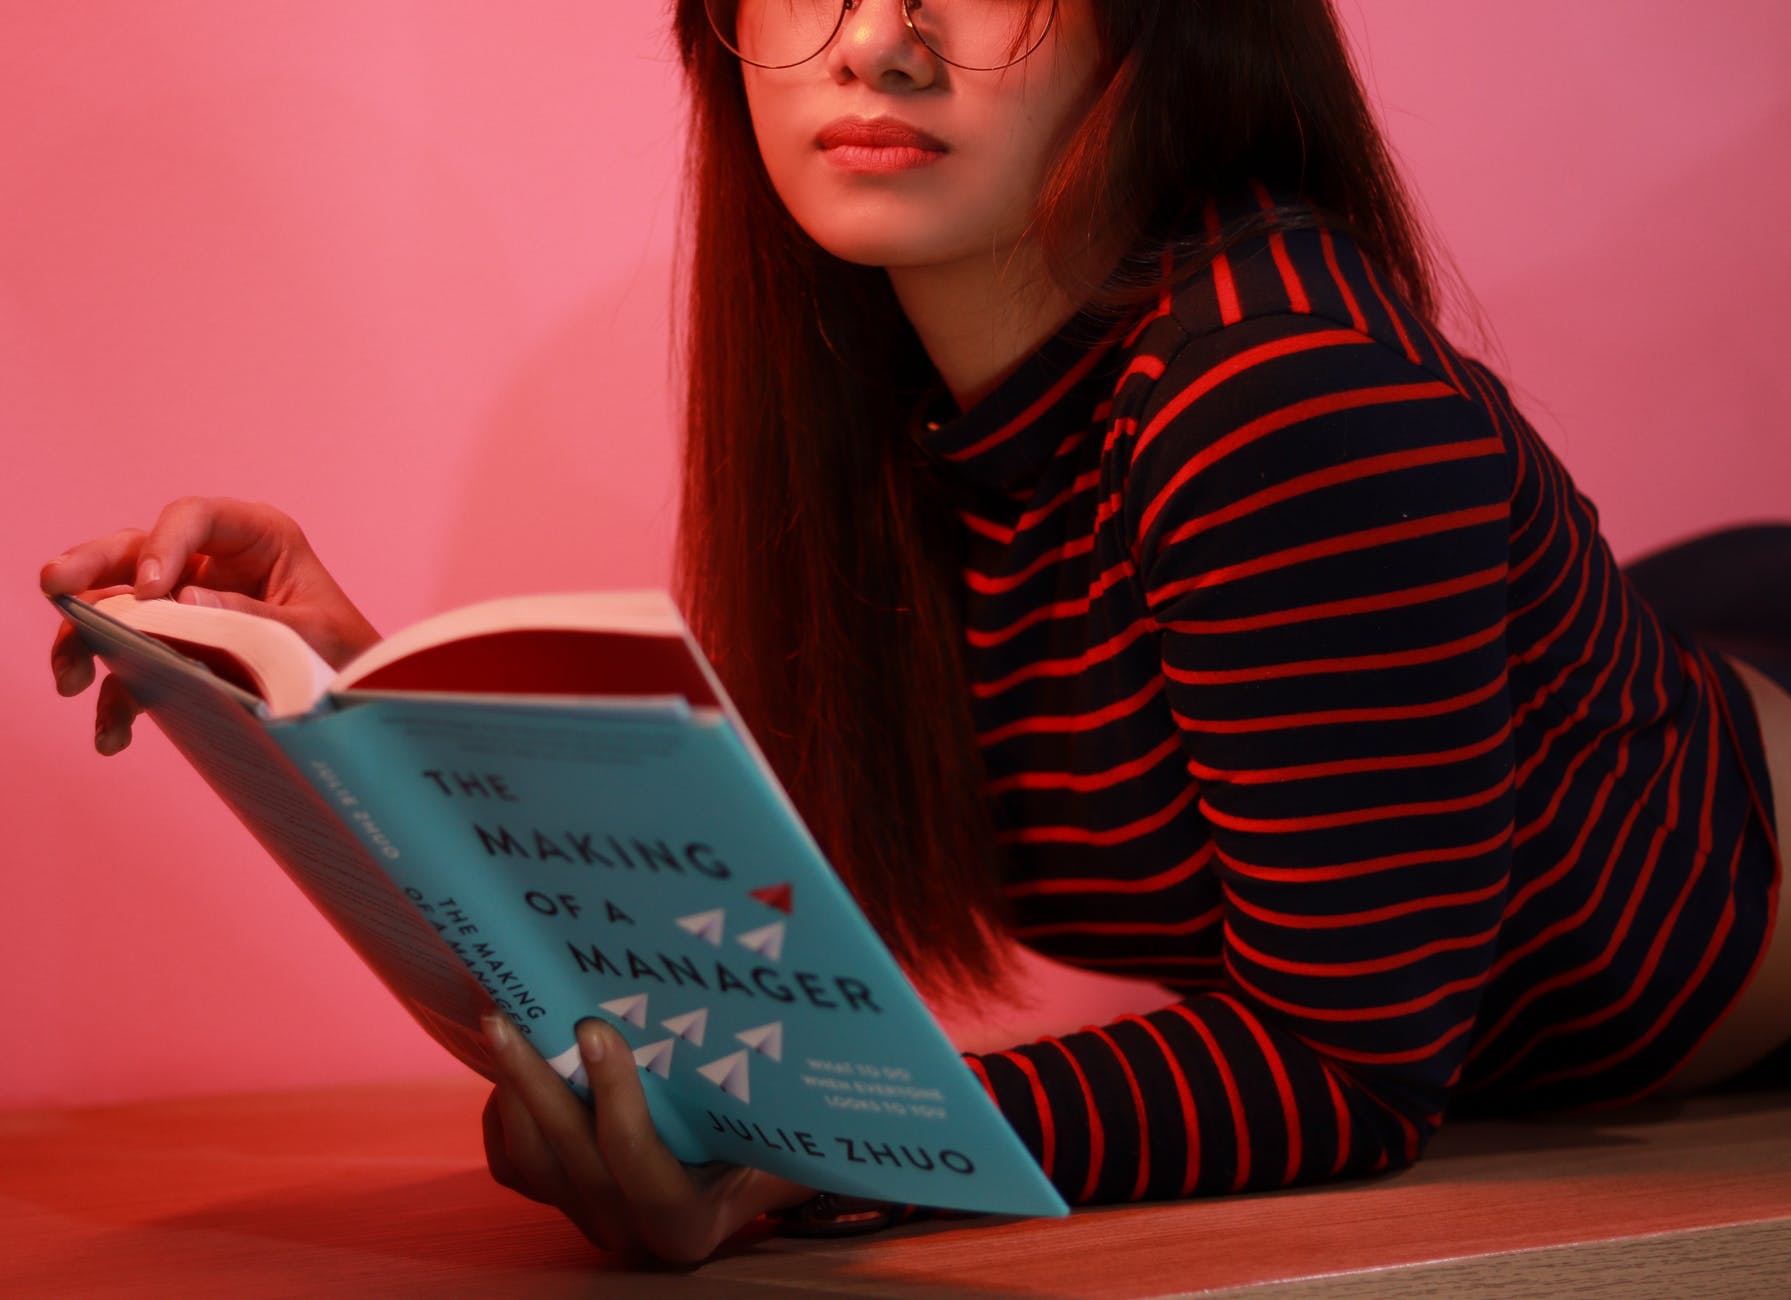 Una chica pelirroja tumbada boca abajo leyendo un libro. Usa gafas y viste una camiseta manga larga de color negro y franjas rojas. 